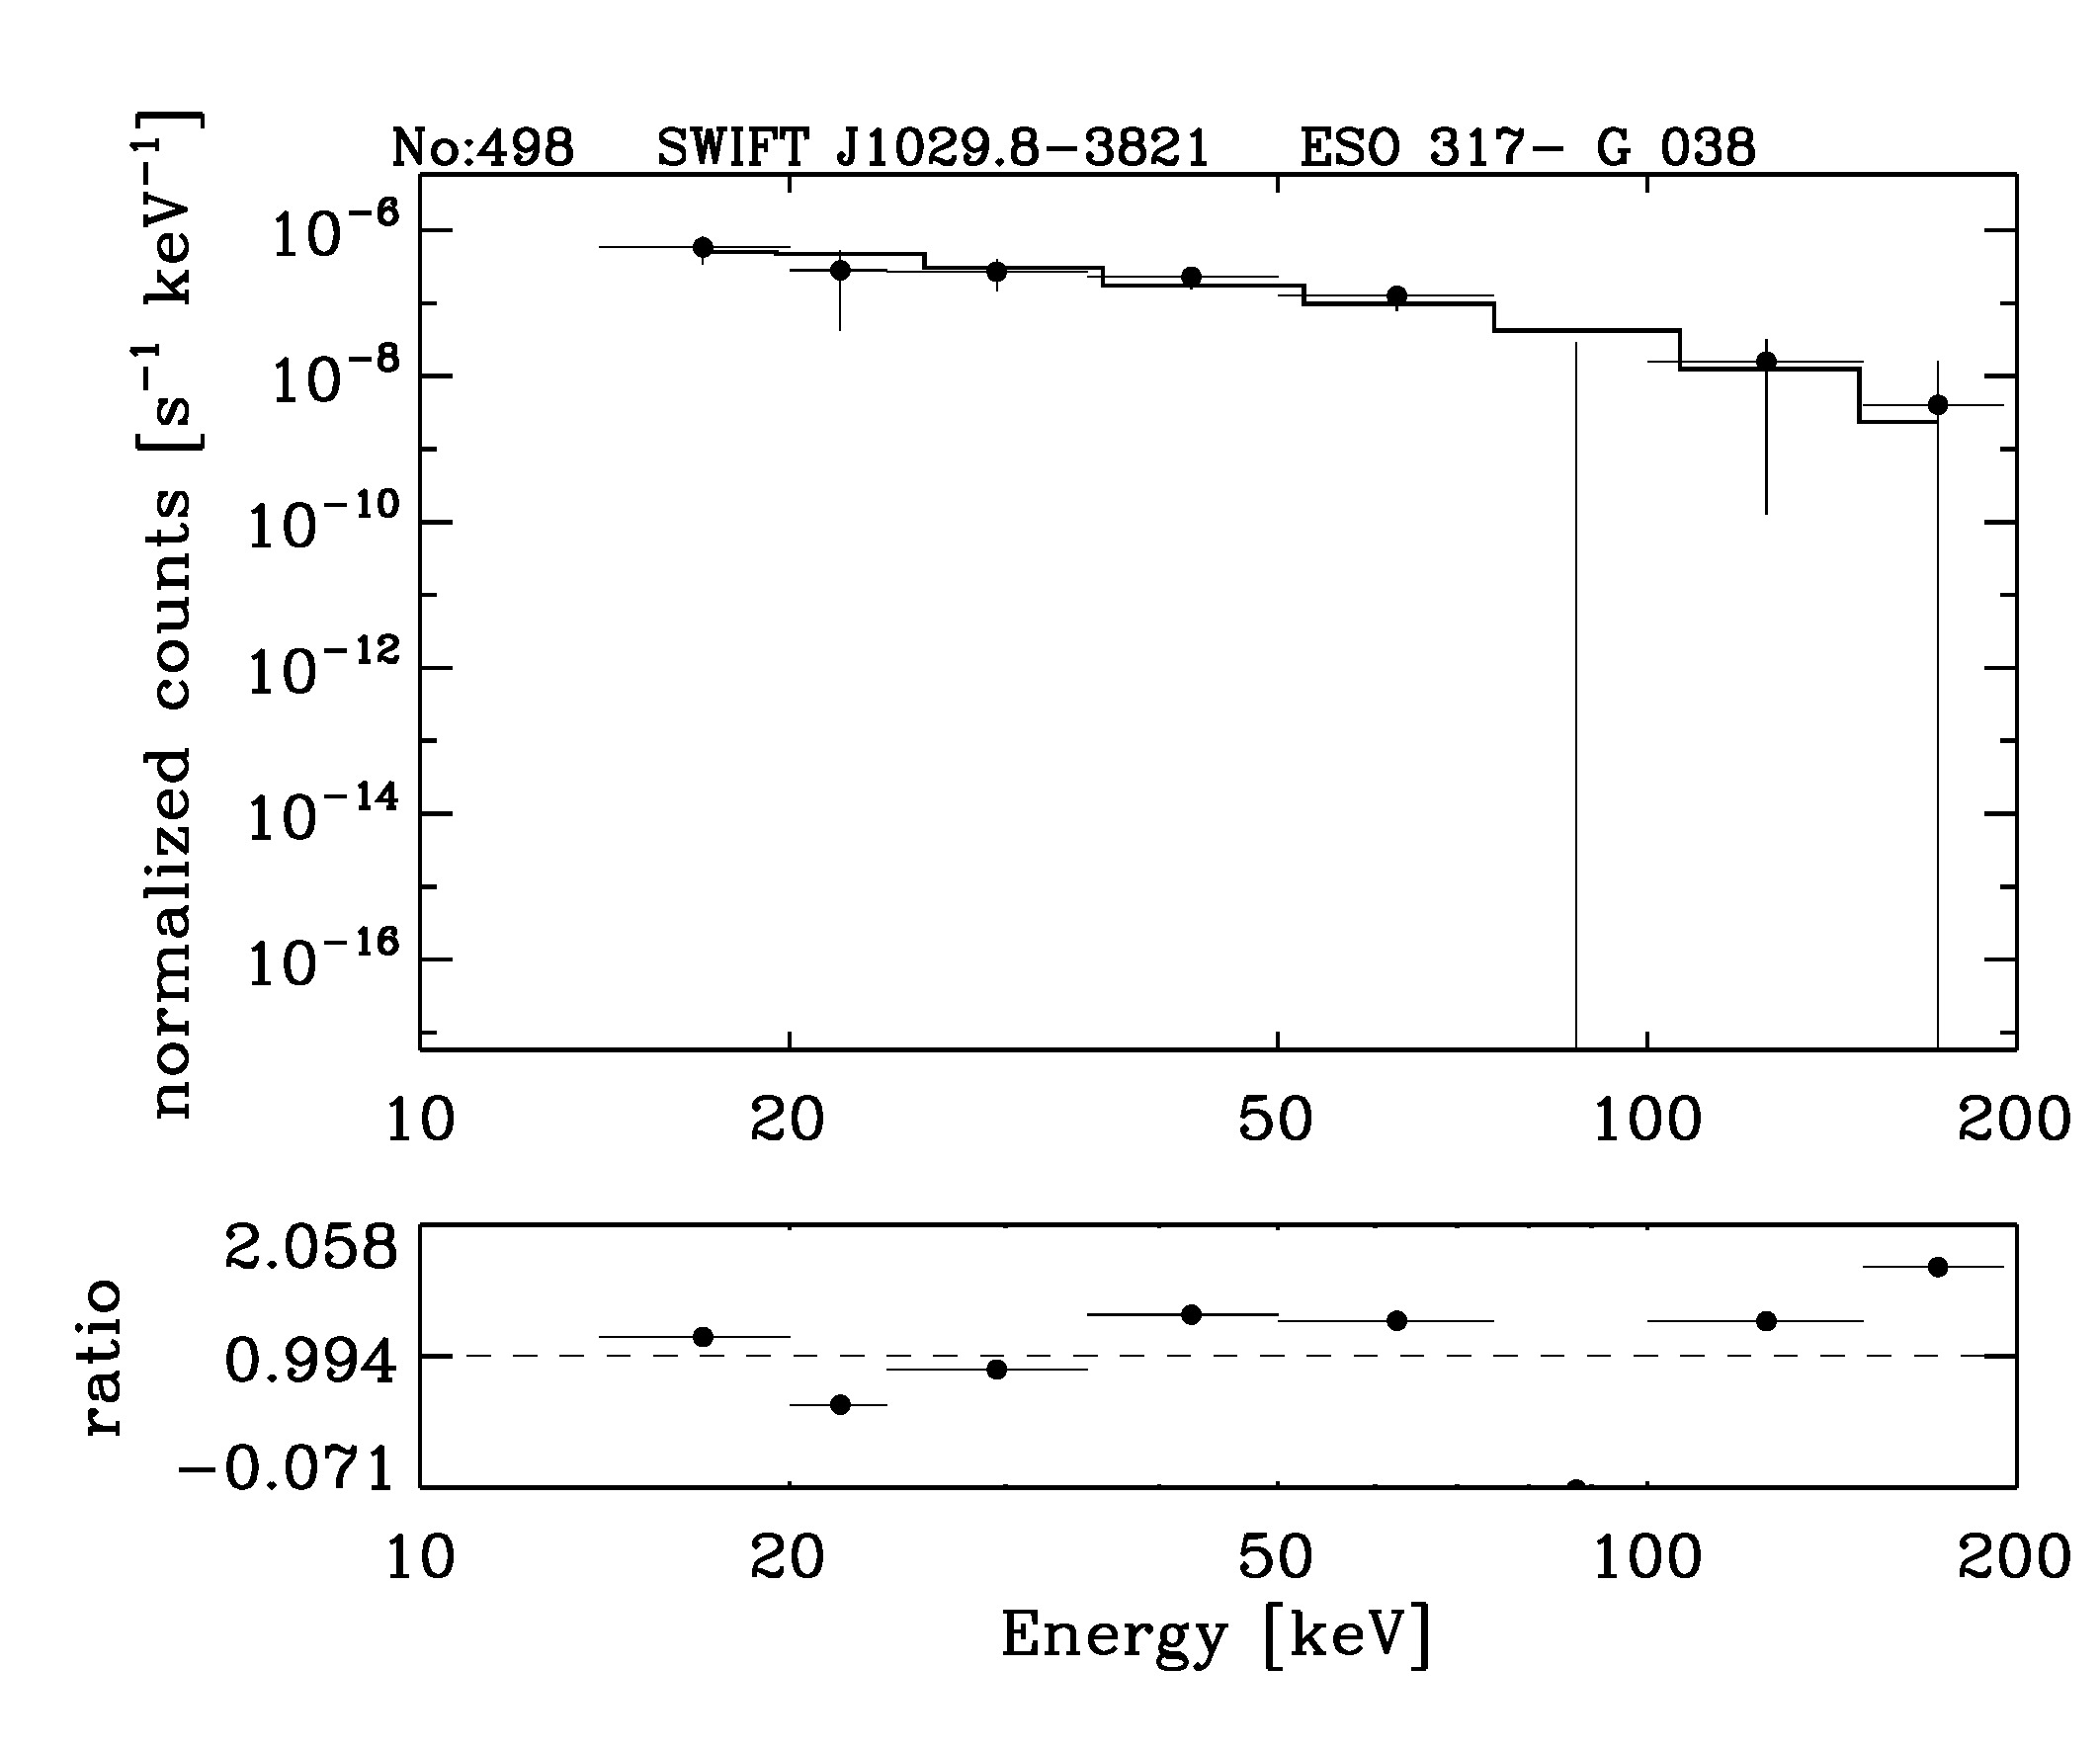 BAT Spectrum for SWIFT J1029.8-3821